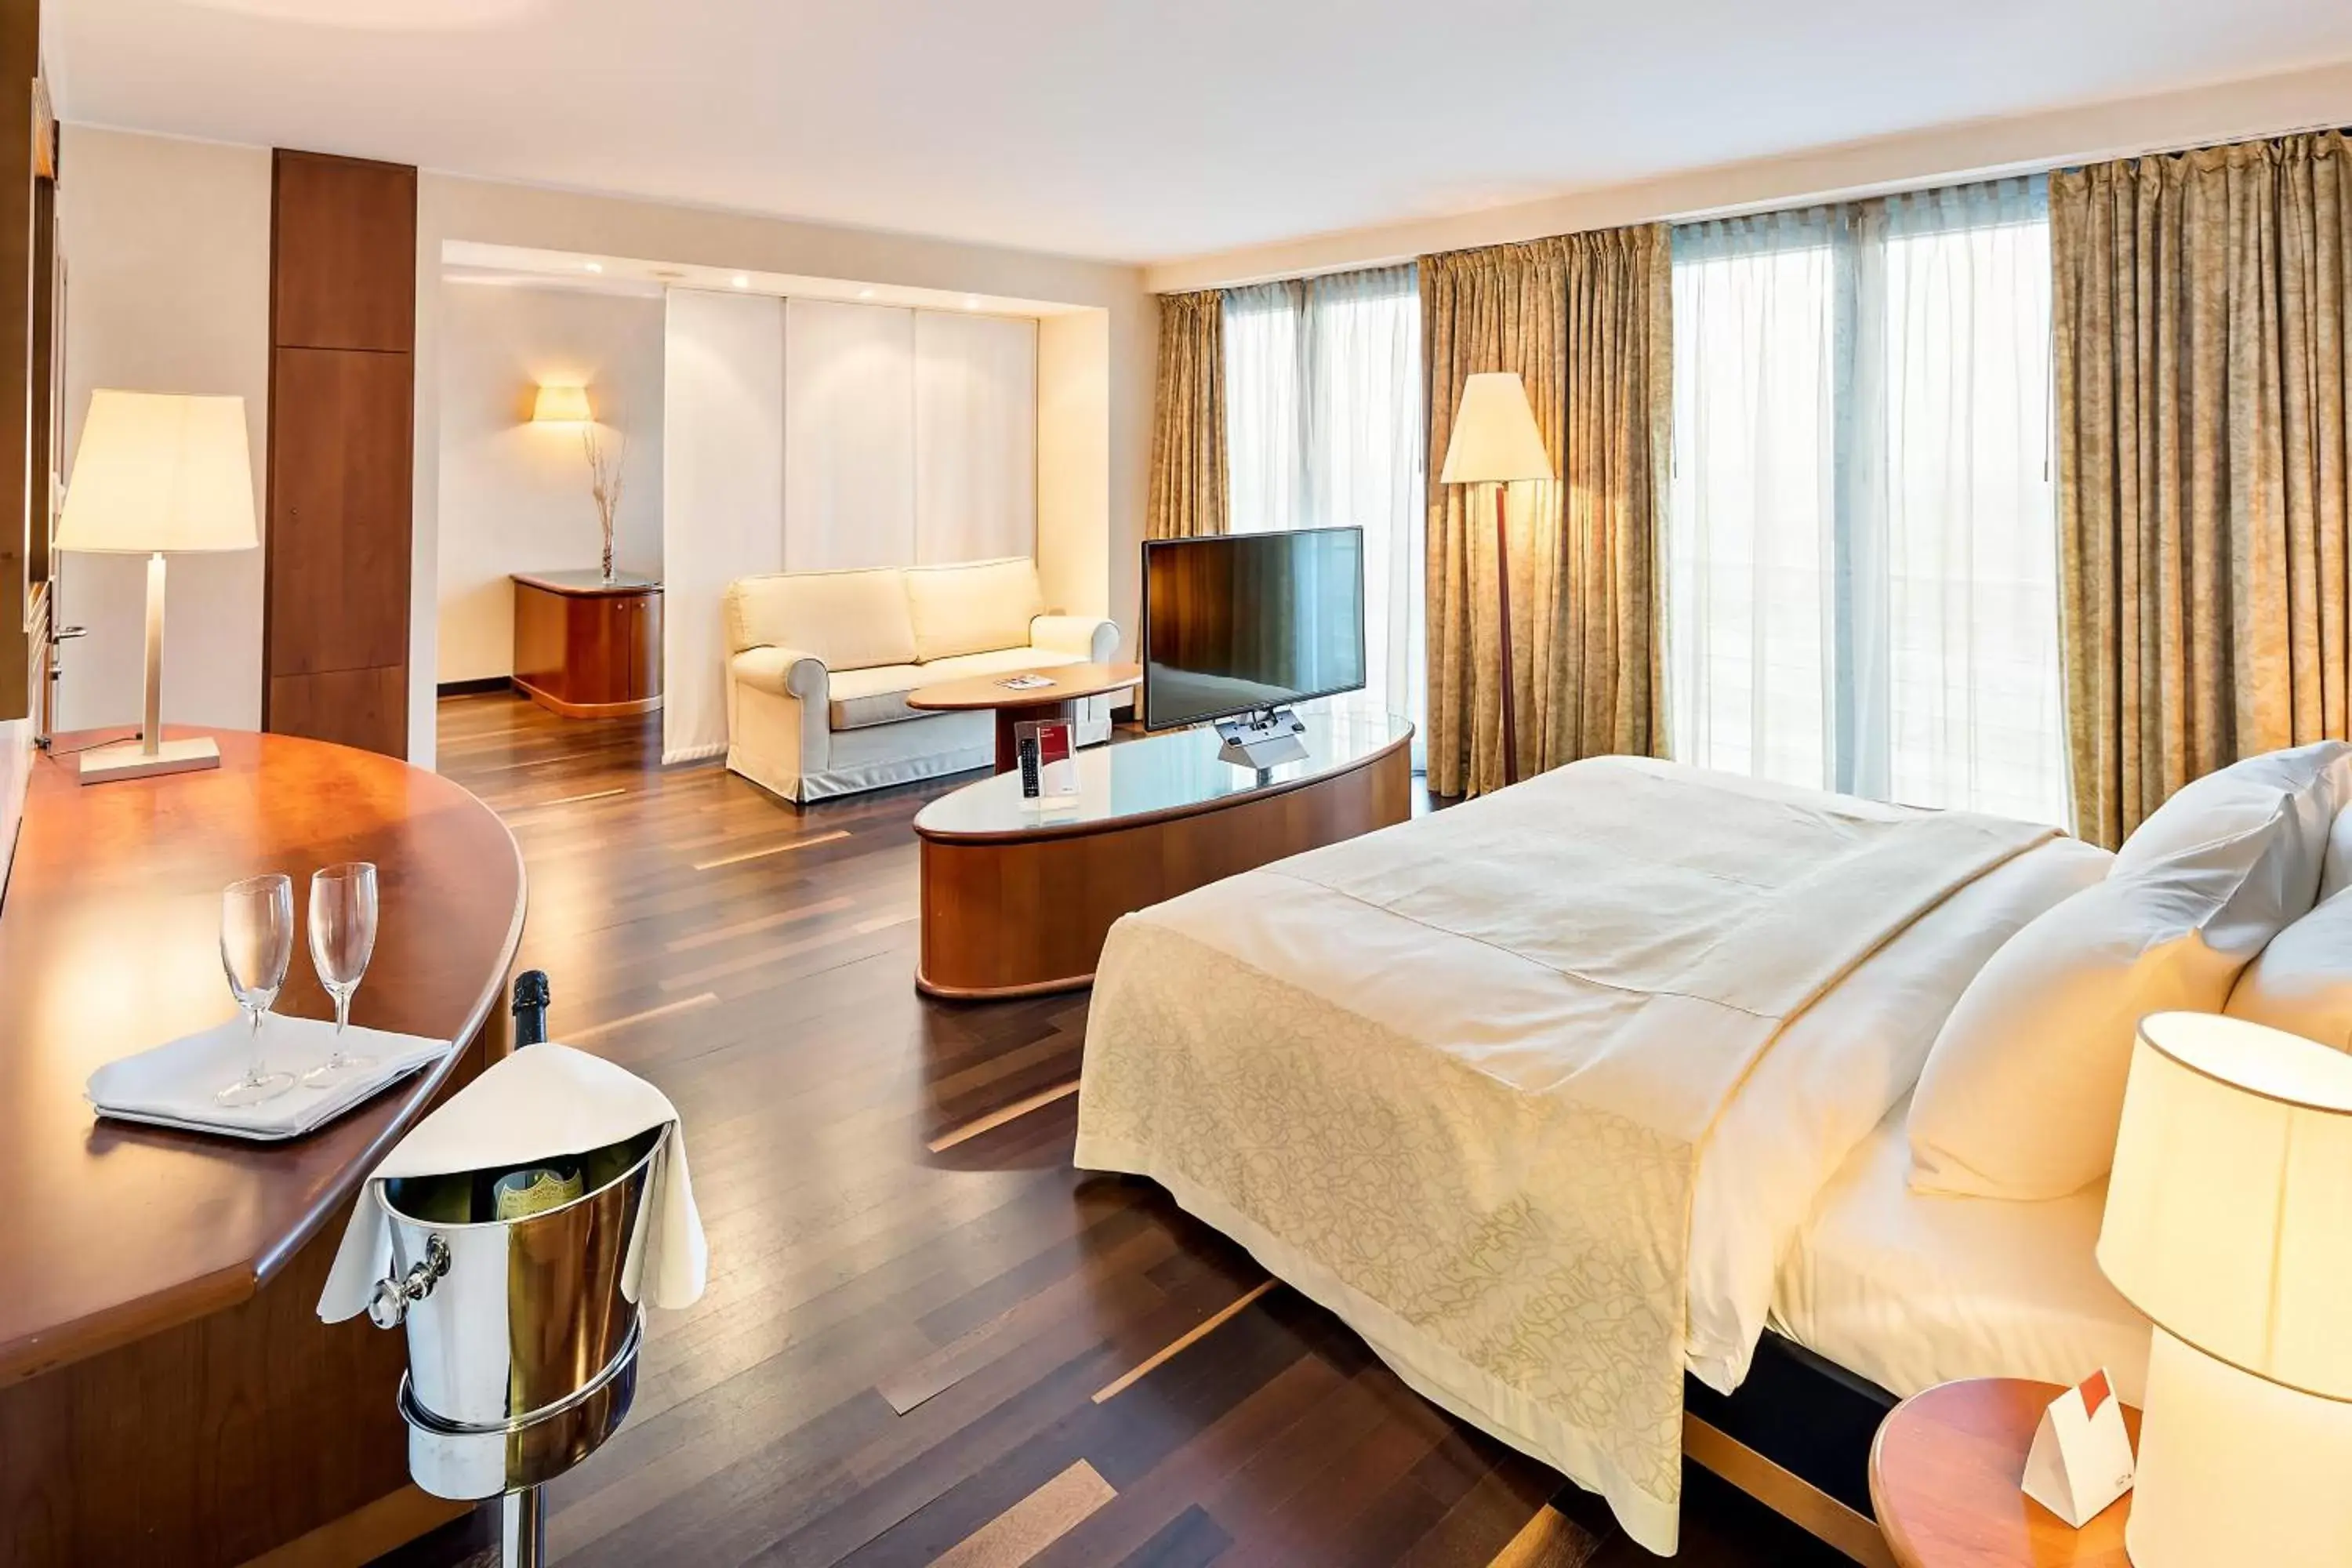 Bed in Austria Trend Hotel Ljubljana